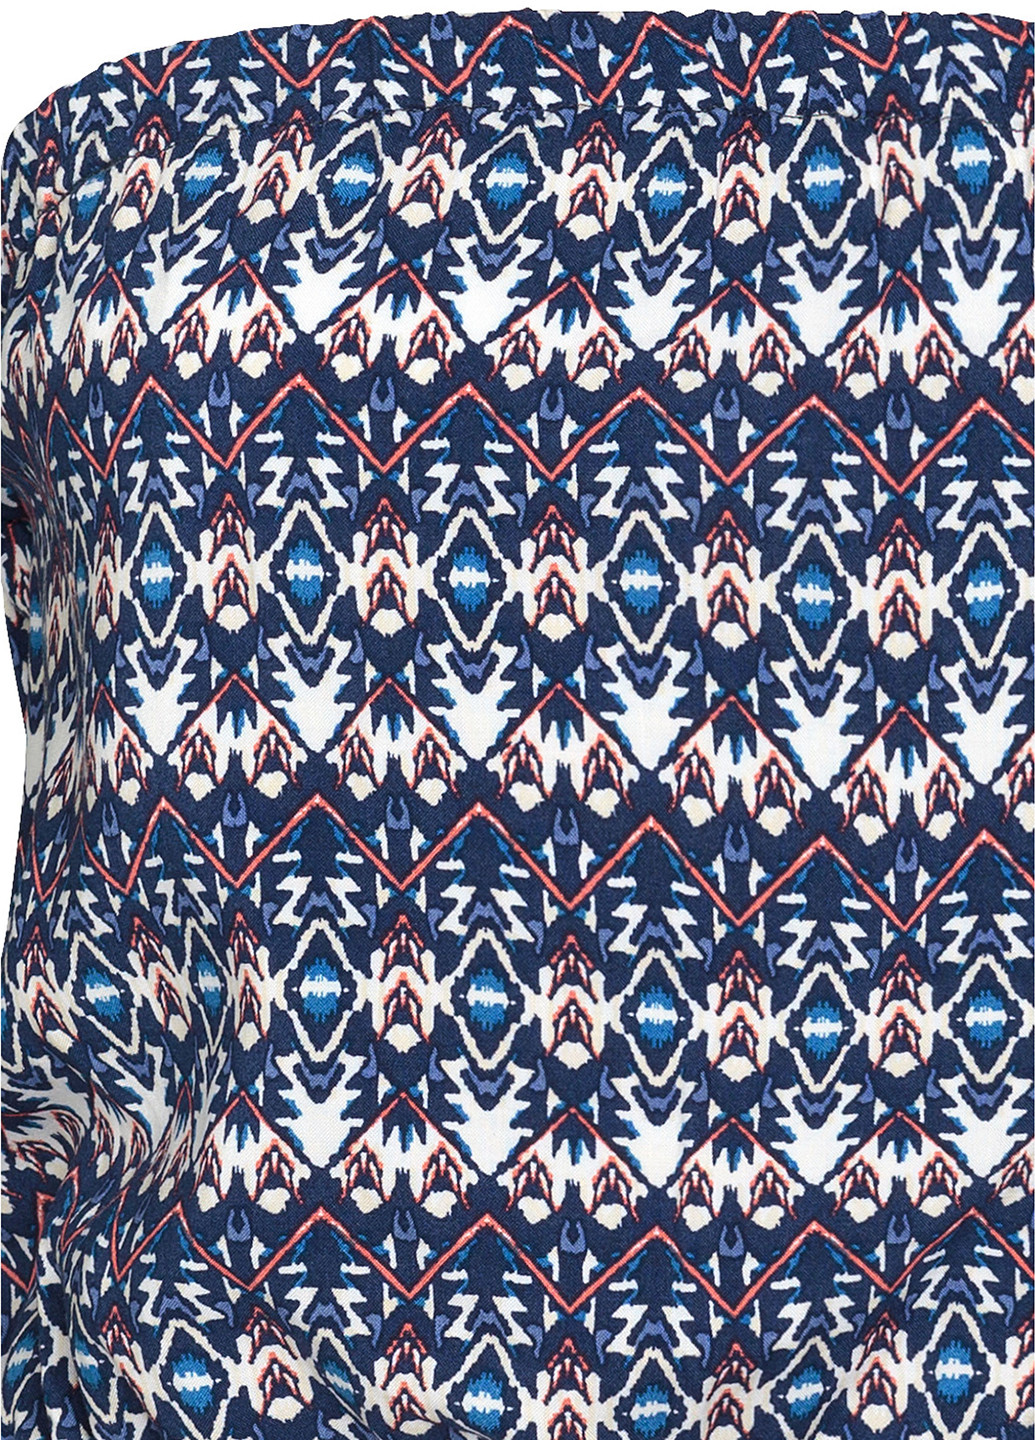 Комбінезон H&M комбінезон-шорти геометричний синій кежуал